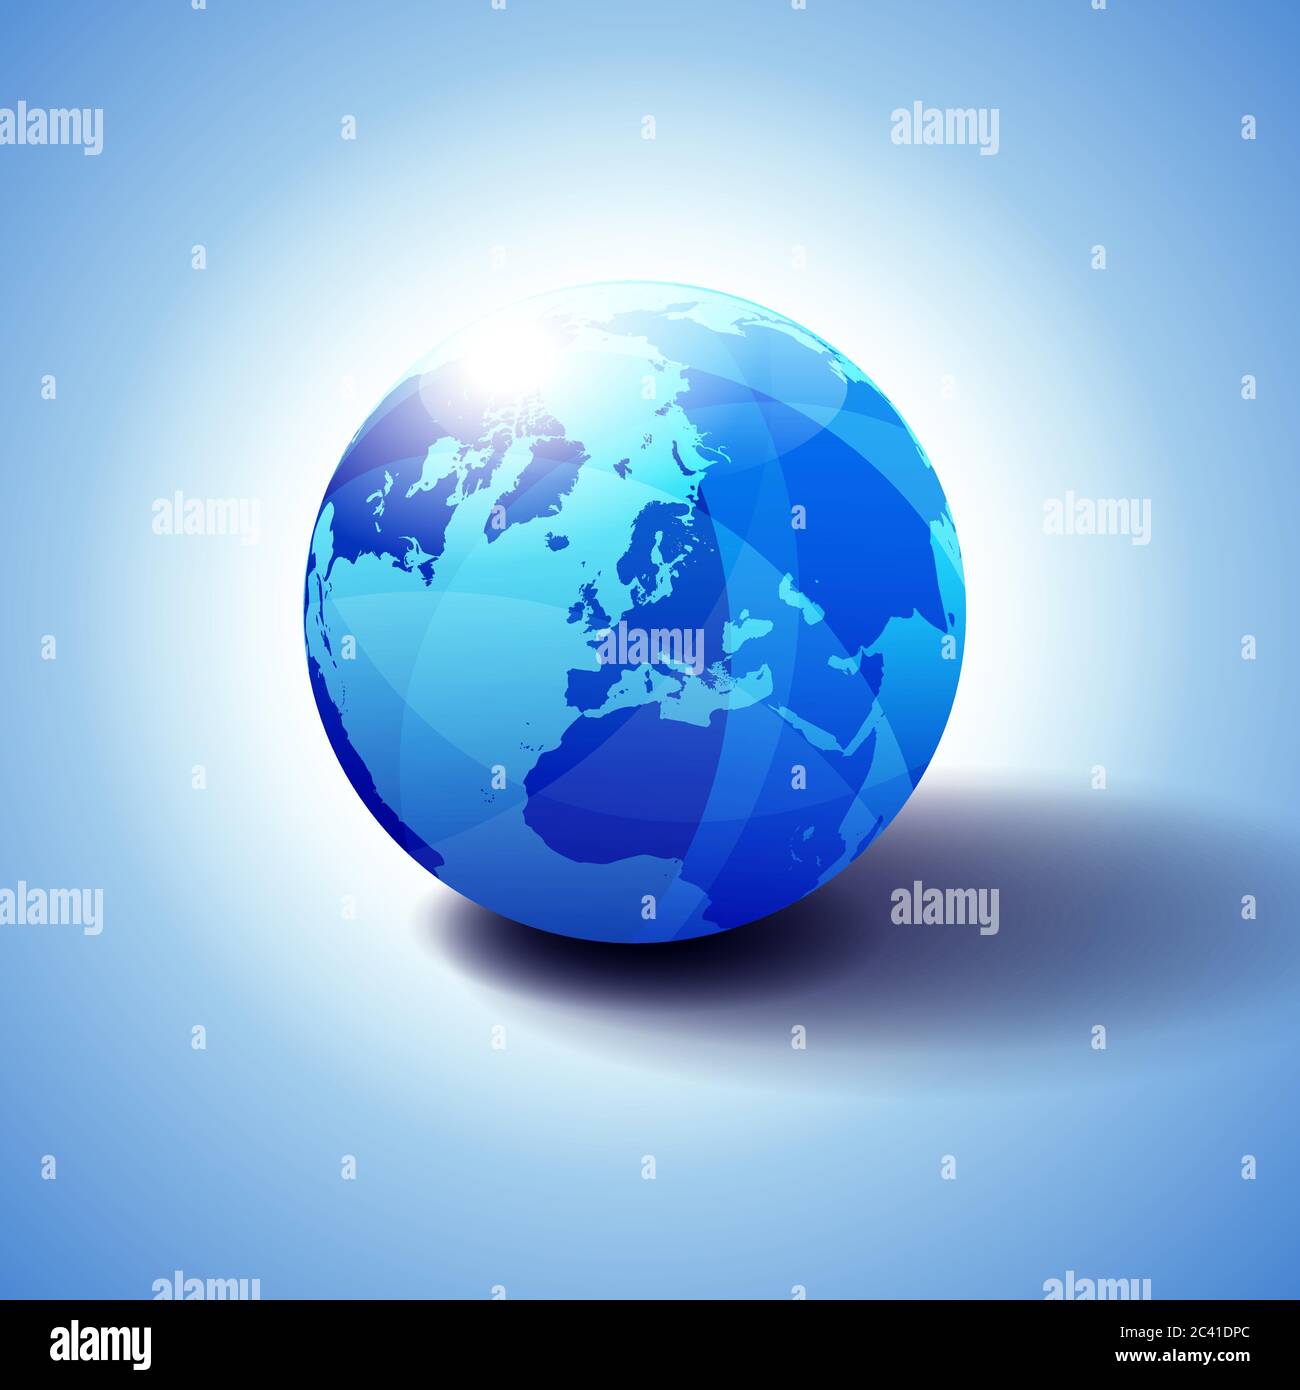 Pôle Nord, Europe Haut du monde mondial, Globe Icon illustration 3D, sphère brillante, brillante avec carte globale en bleu subtil donnant une transparence Illustration de Vecteur